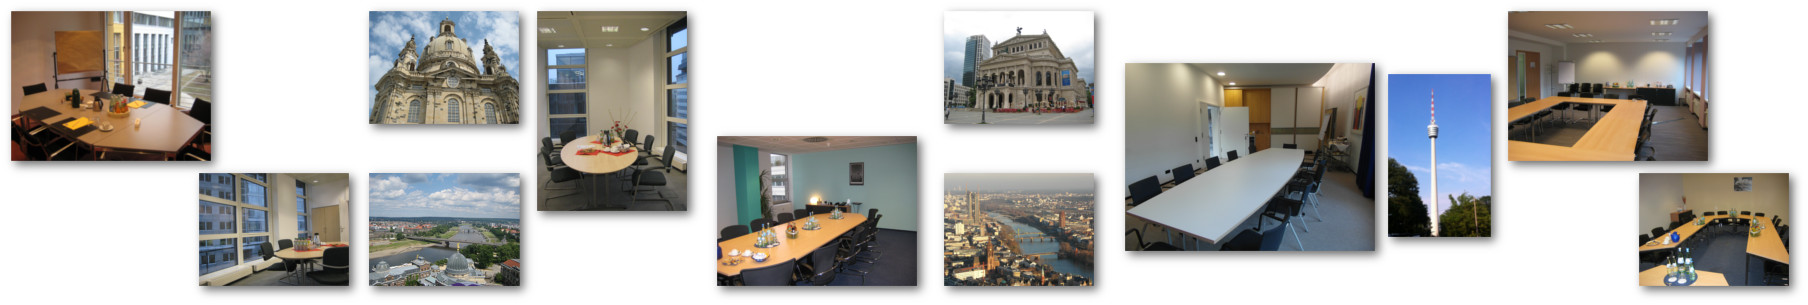 Training-Standorte Unsere Trainings finden entweder an Comelio Standorten in Berlin oder München oder in sorgfältig ausgewählten Konferenzzentren und Hotels.